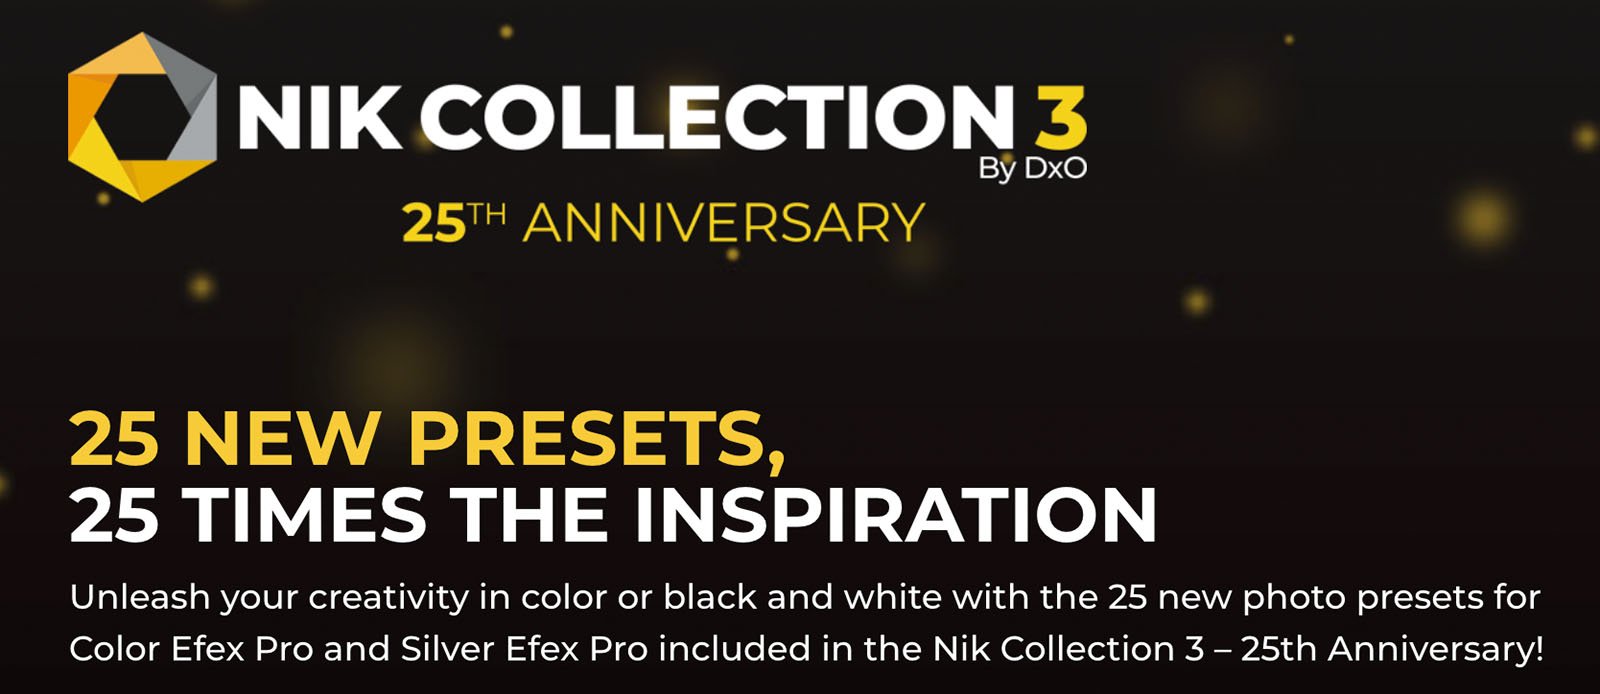 Nik kỷ niệm 25 năm với bộ preset mới cho Nik Collection 3